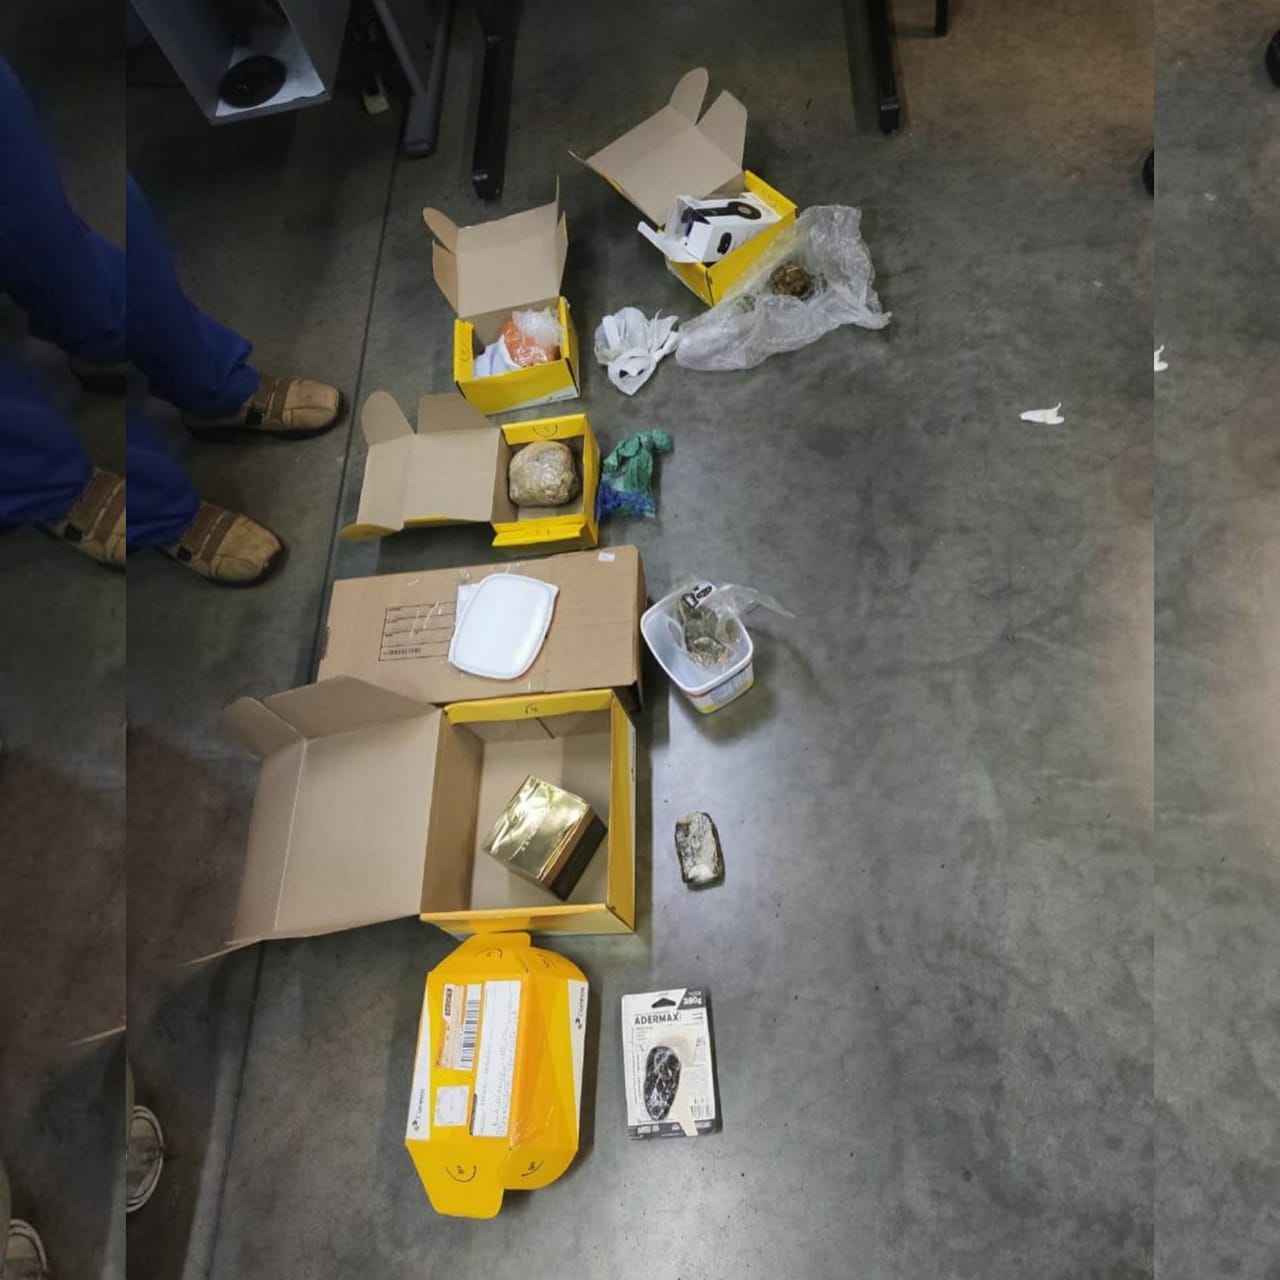 Porções de maconha e pasta base de cocaína foram encontradas em encomendas na unidade dos Correios da Vila Brasília, em Aparecida de Goiânia. (Foto: Divulgação/PM)